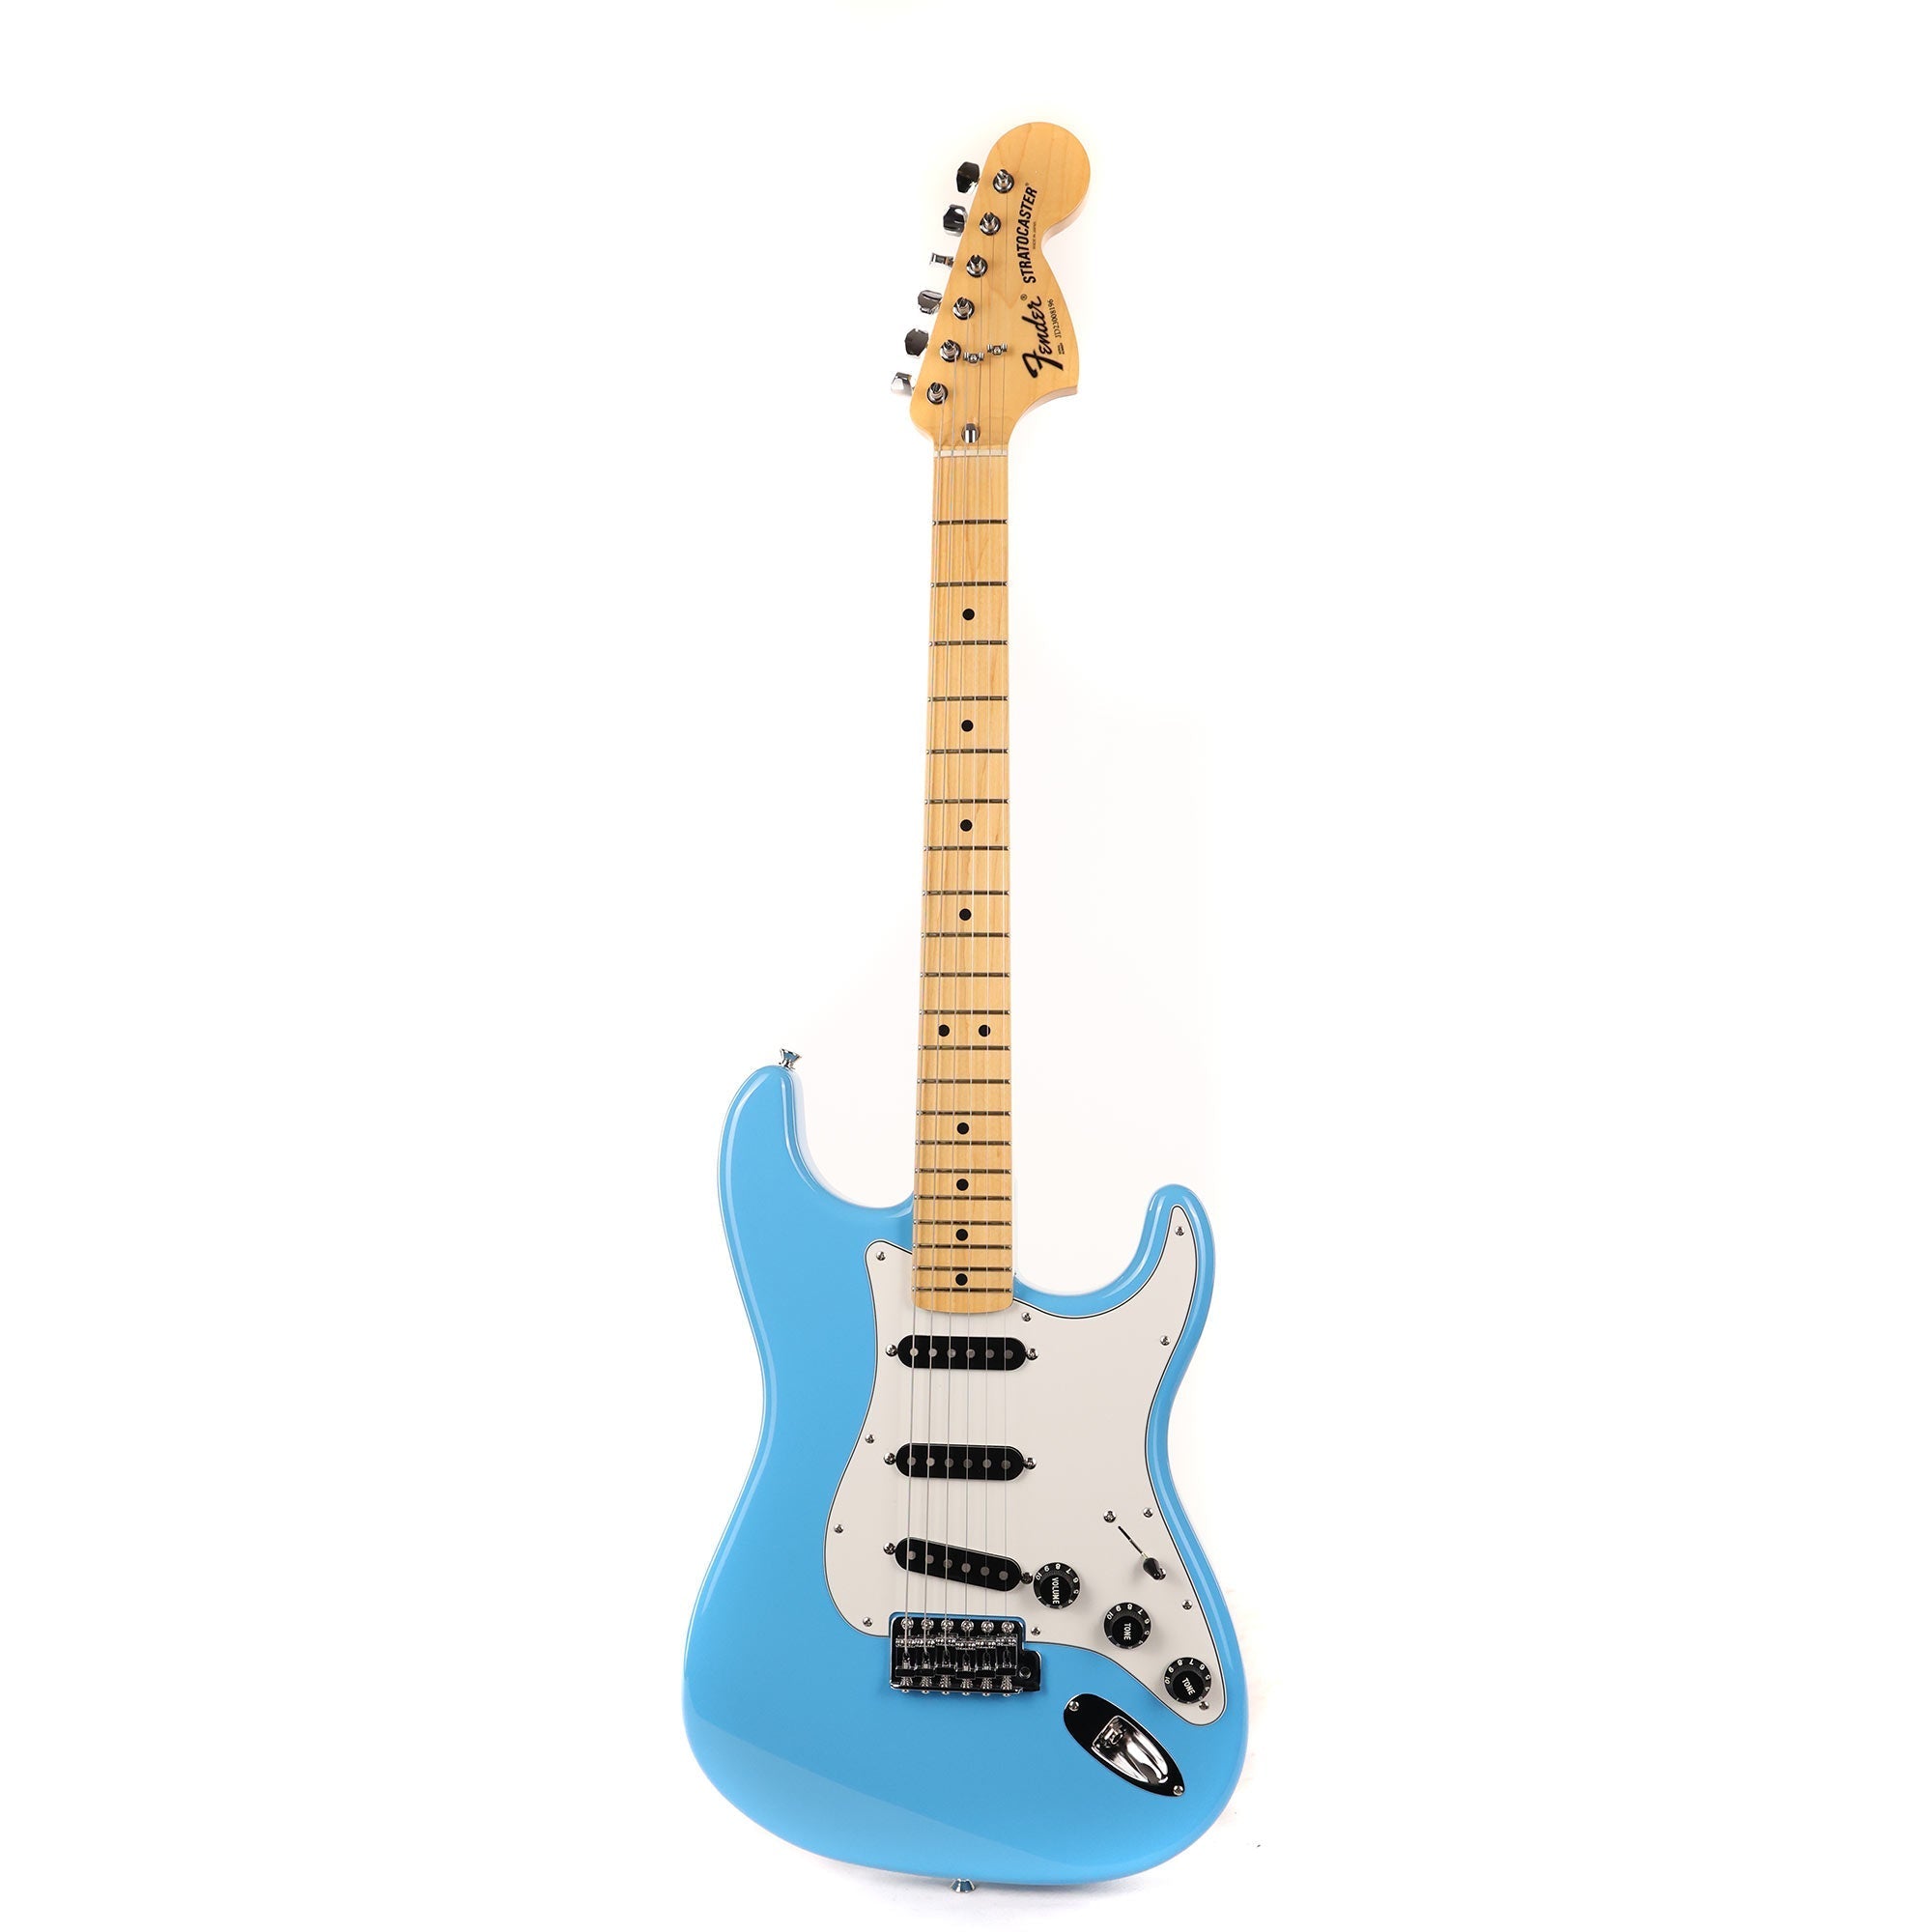 Fender Japan Limited Edition International Color Stratocaster Maui Blue